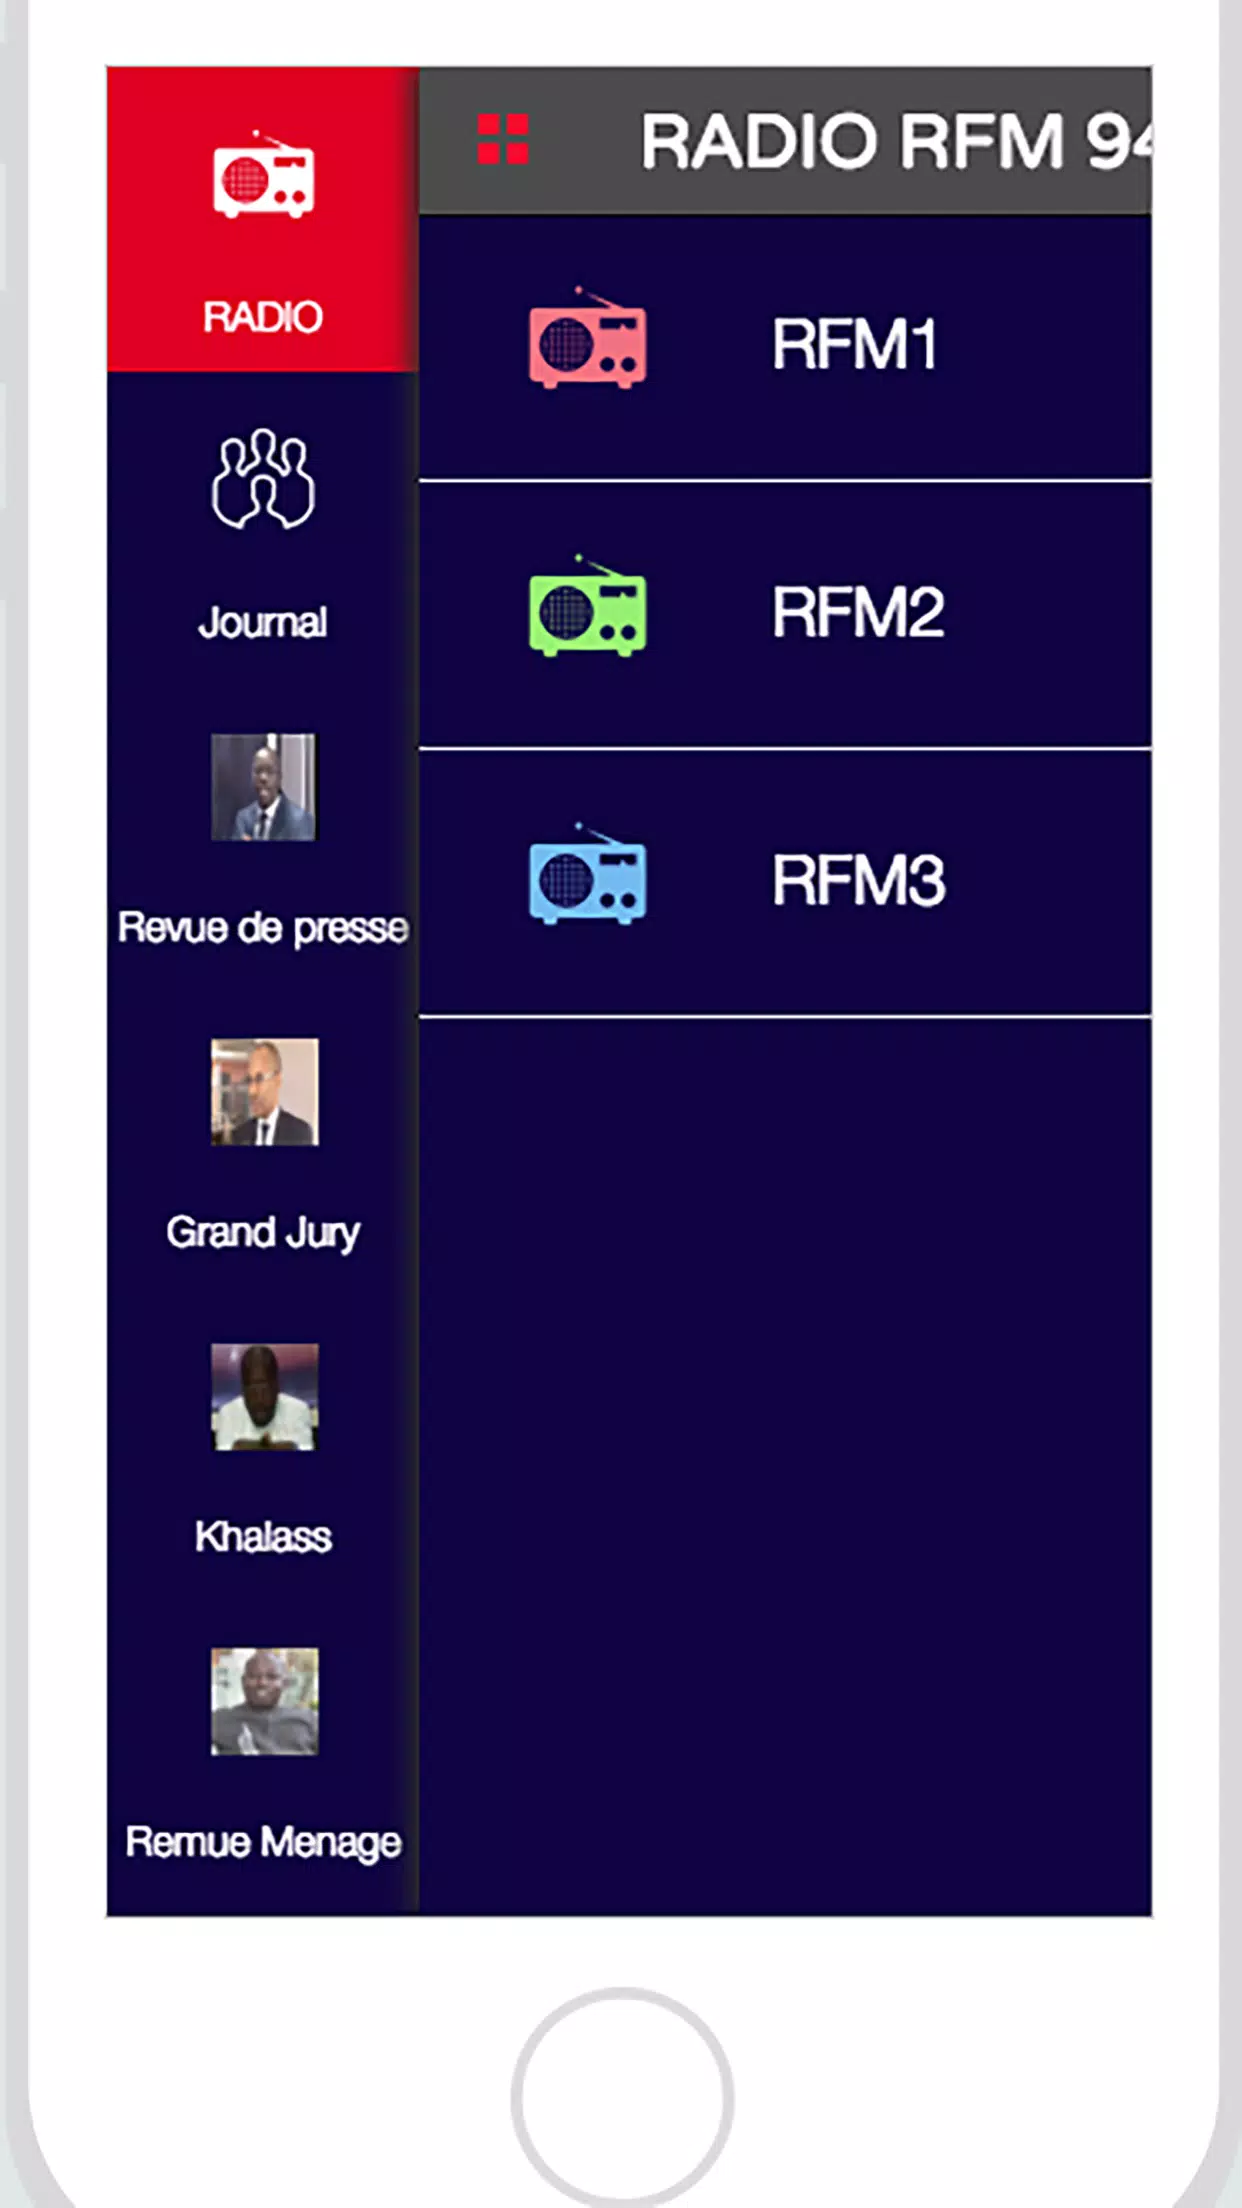 Descarga de APK de RFM RADIO SENEGAL 94.0 para Android